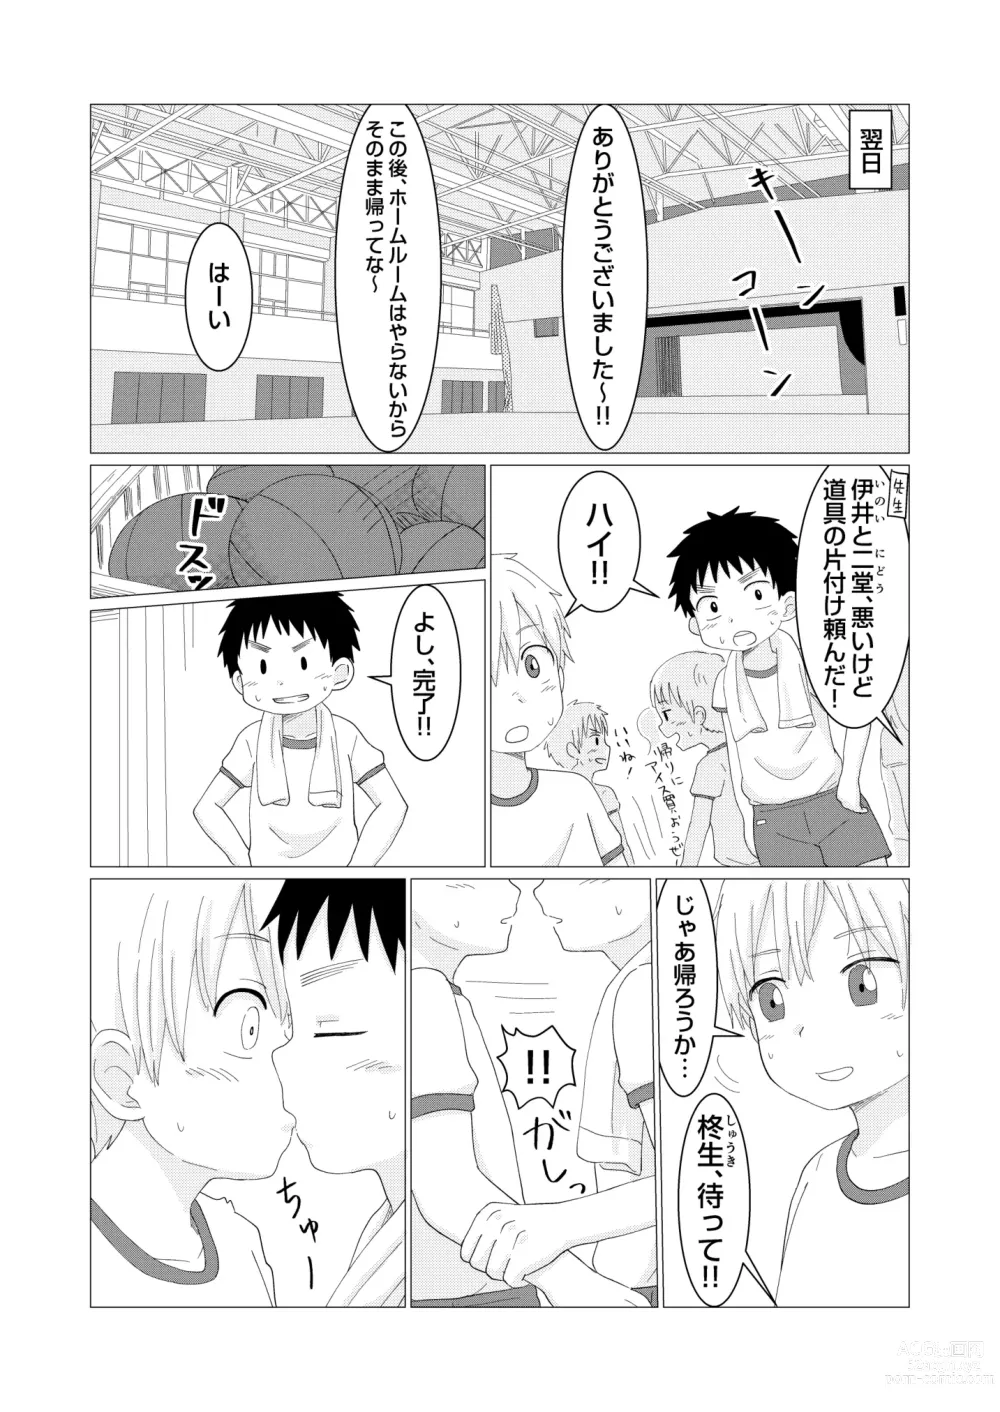 Page 7 of doujinshi Dear My Hero Episode 2